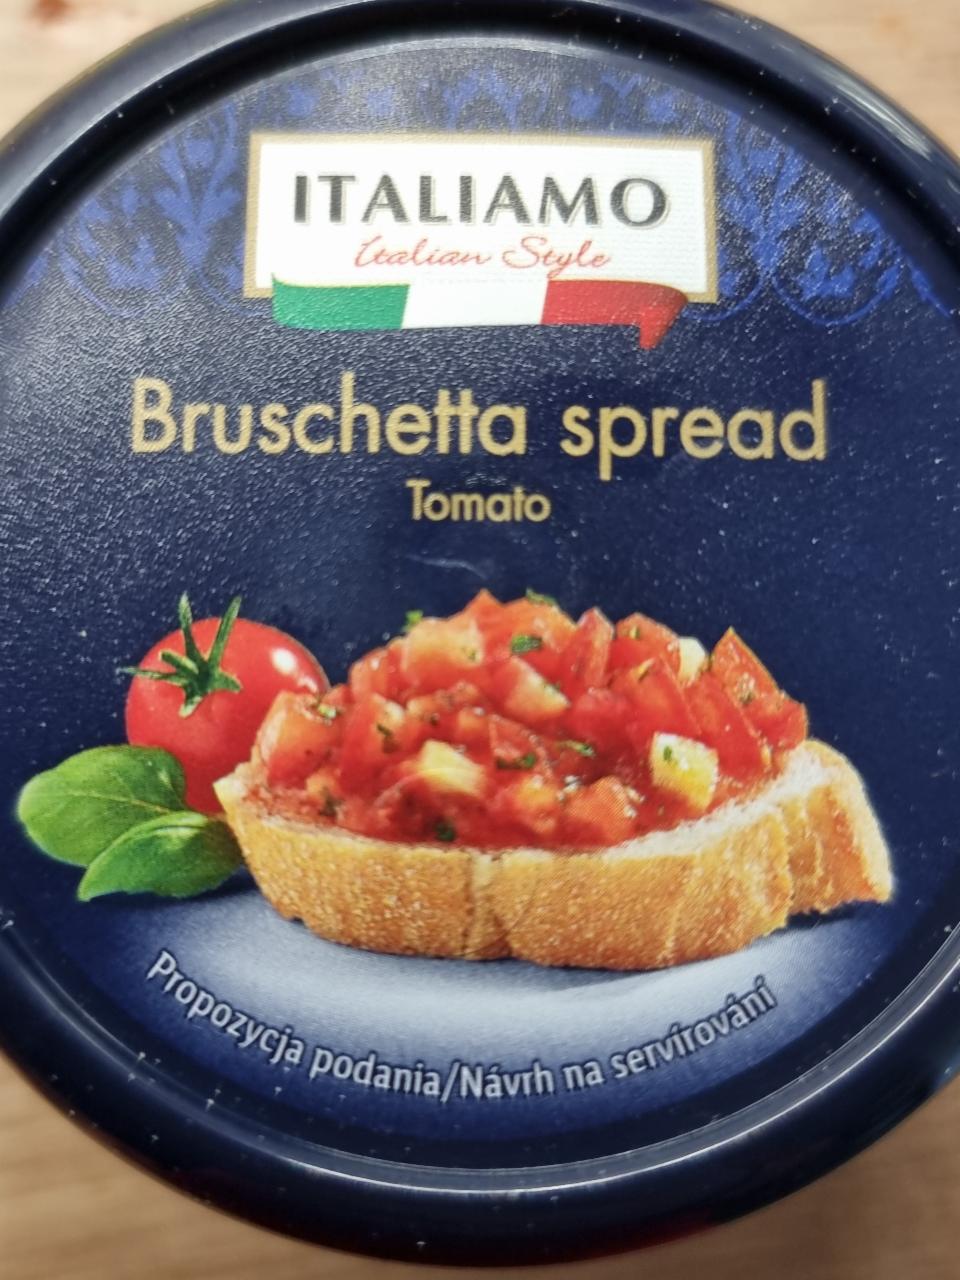 Bruschetta spread hodnoty a nutričné Italiamo kalórie, kJ - tomato